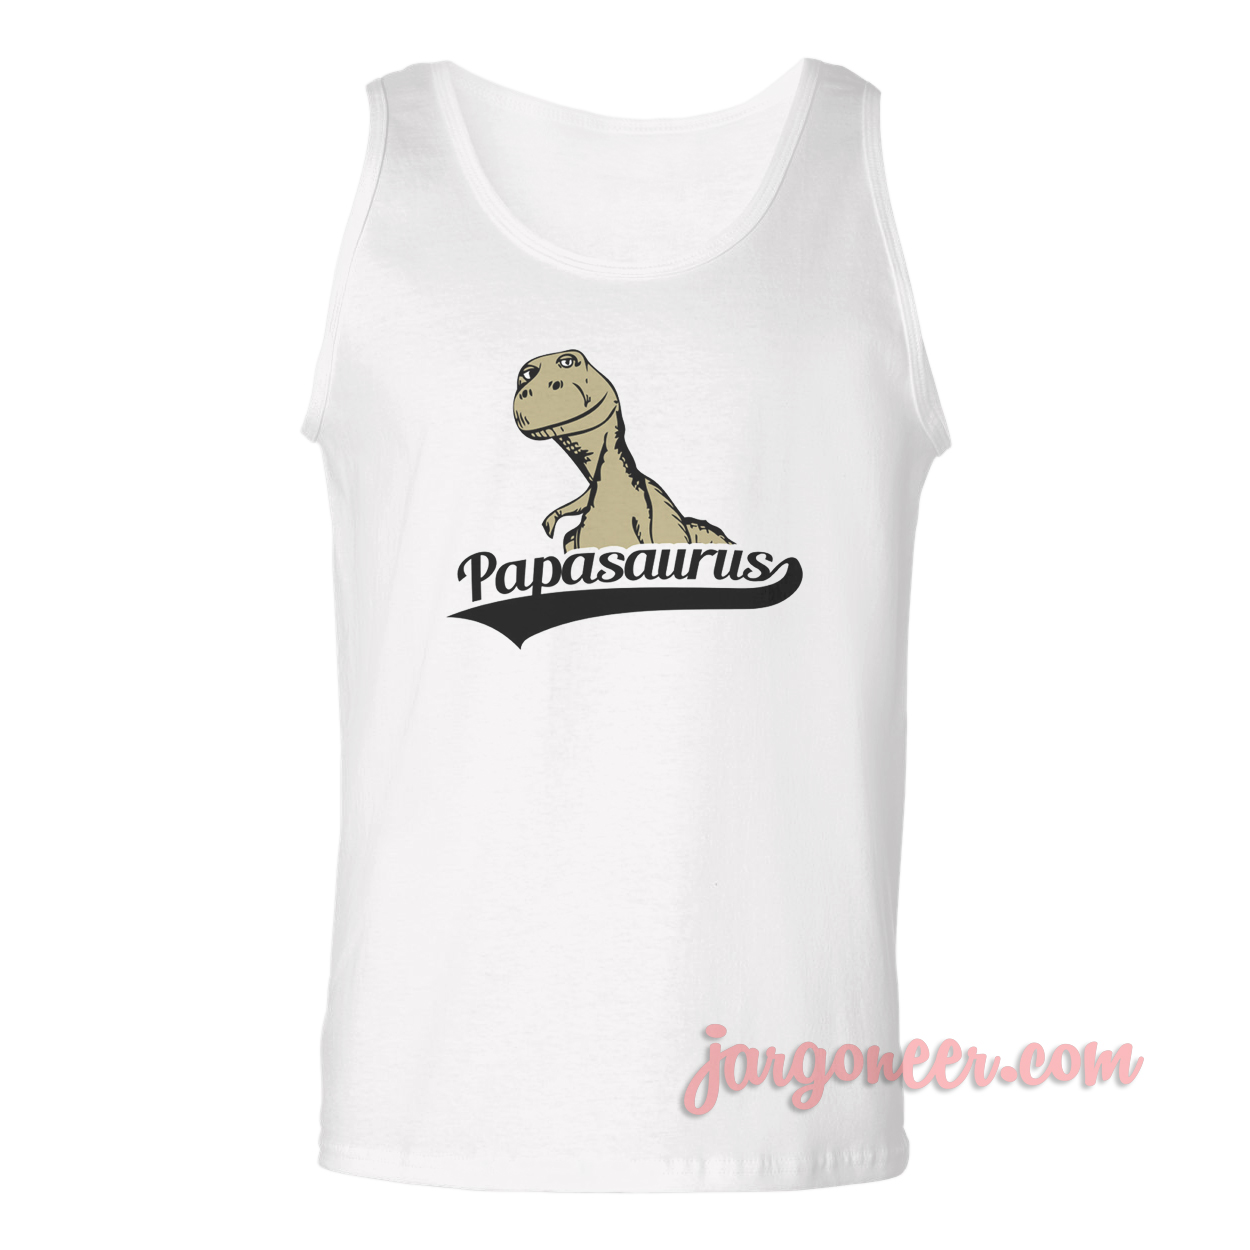 Papasaurus - Shop Unique Graphic Cool Shirt Designs